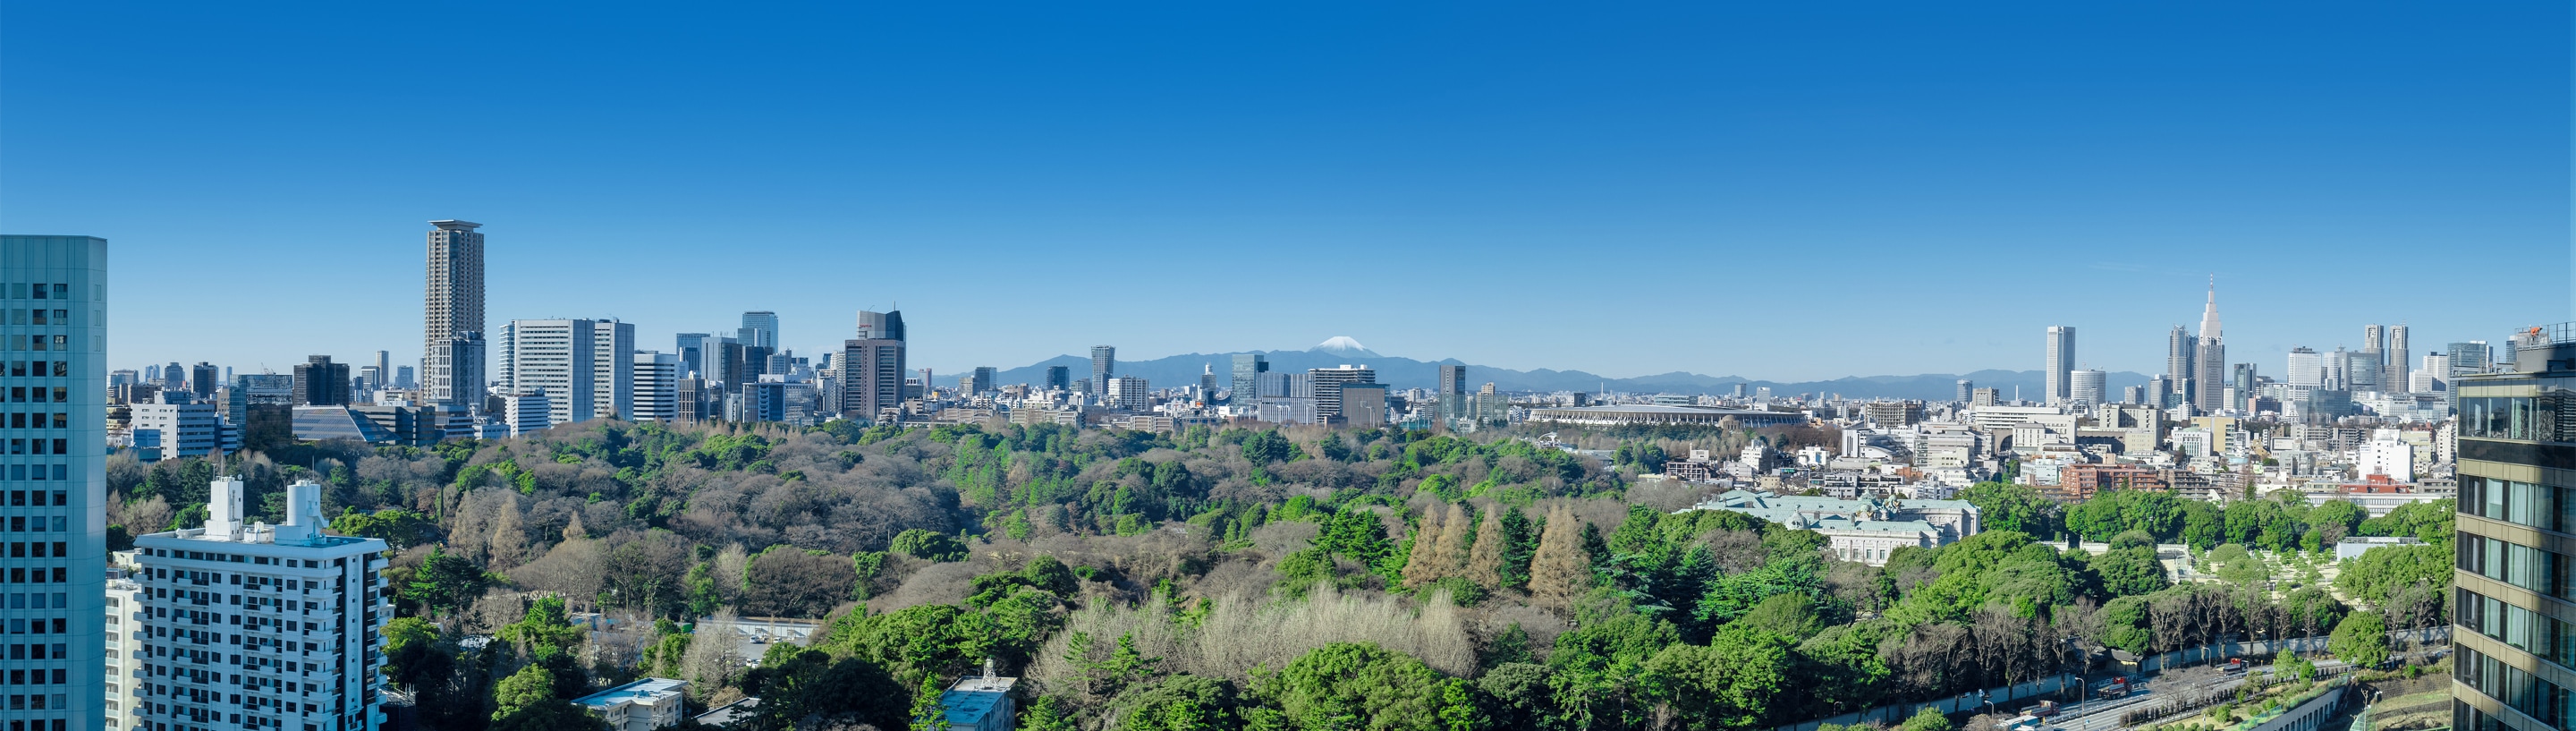 富士山や新宿ビル群を望む景色写真